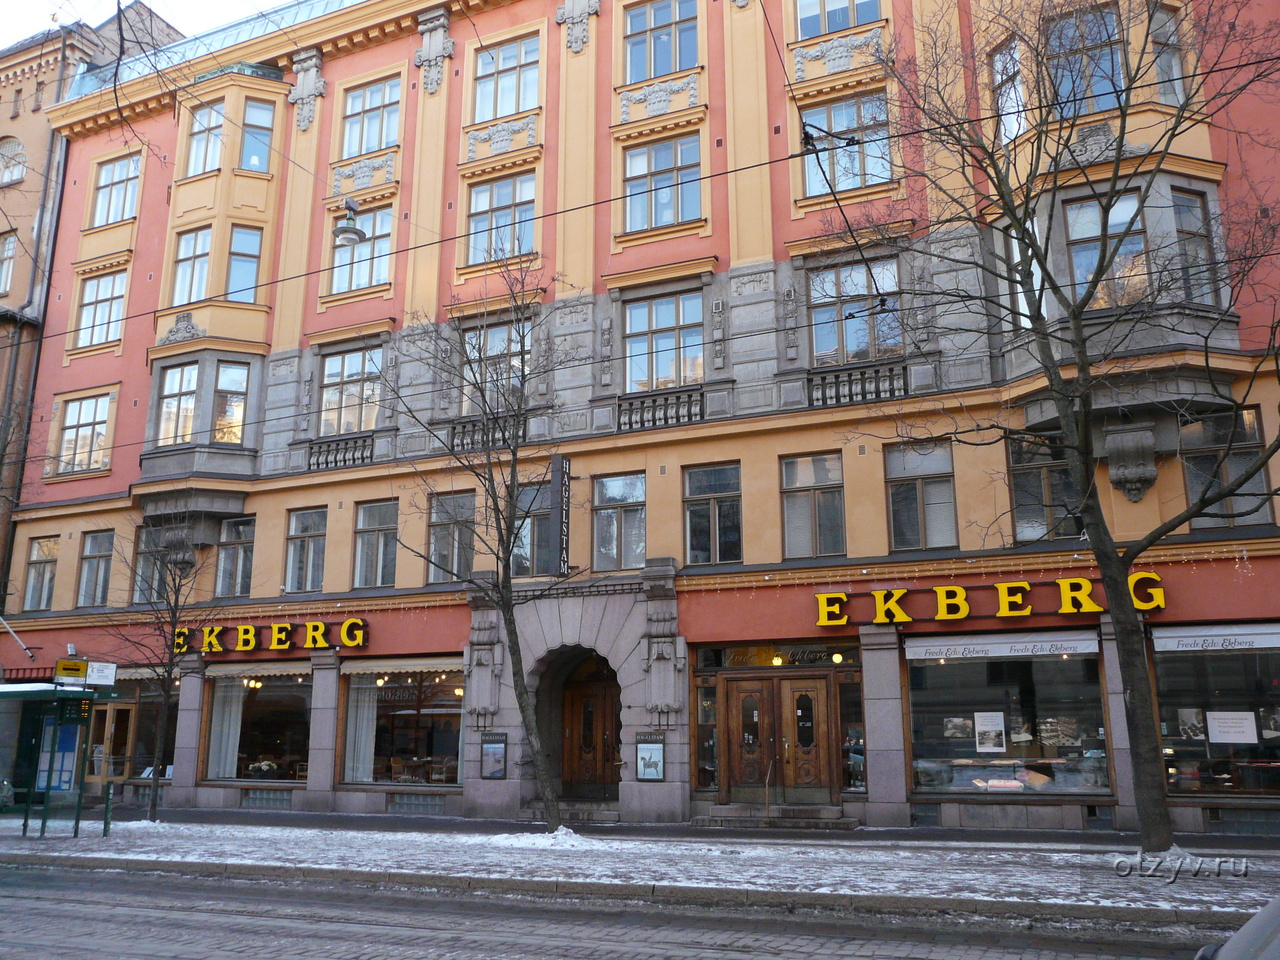 В Хельсинки название улиц пишется на двух официальных языках – шведском и финском.